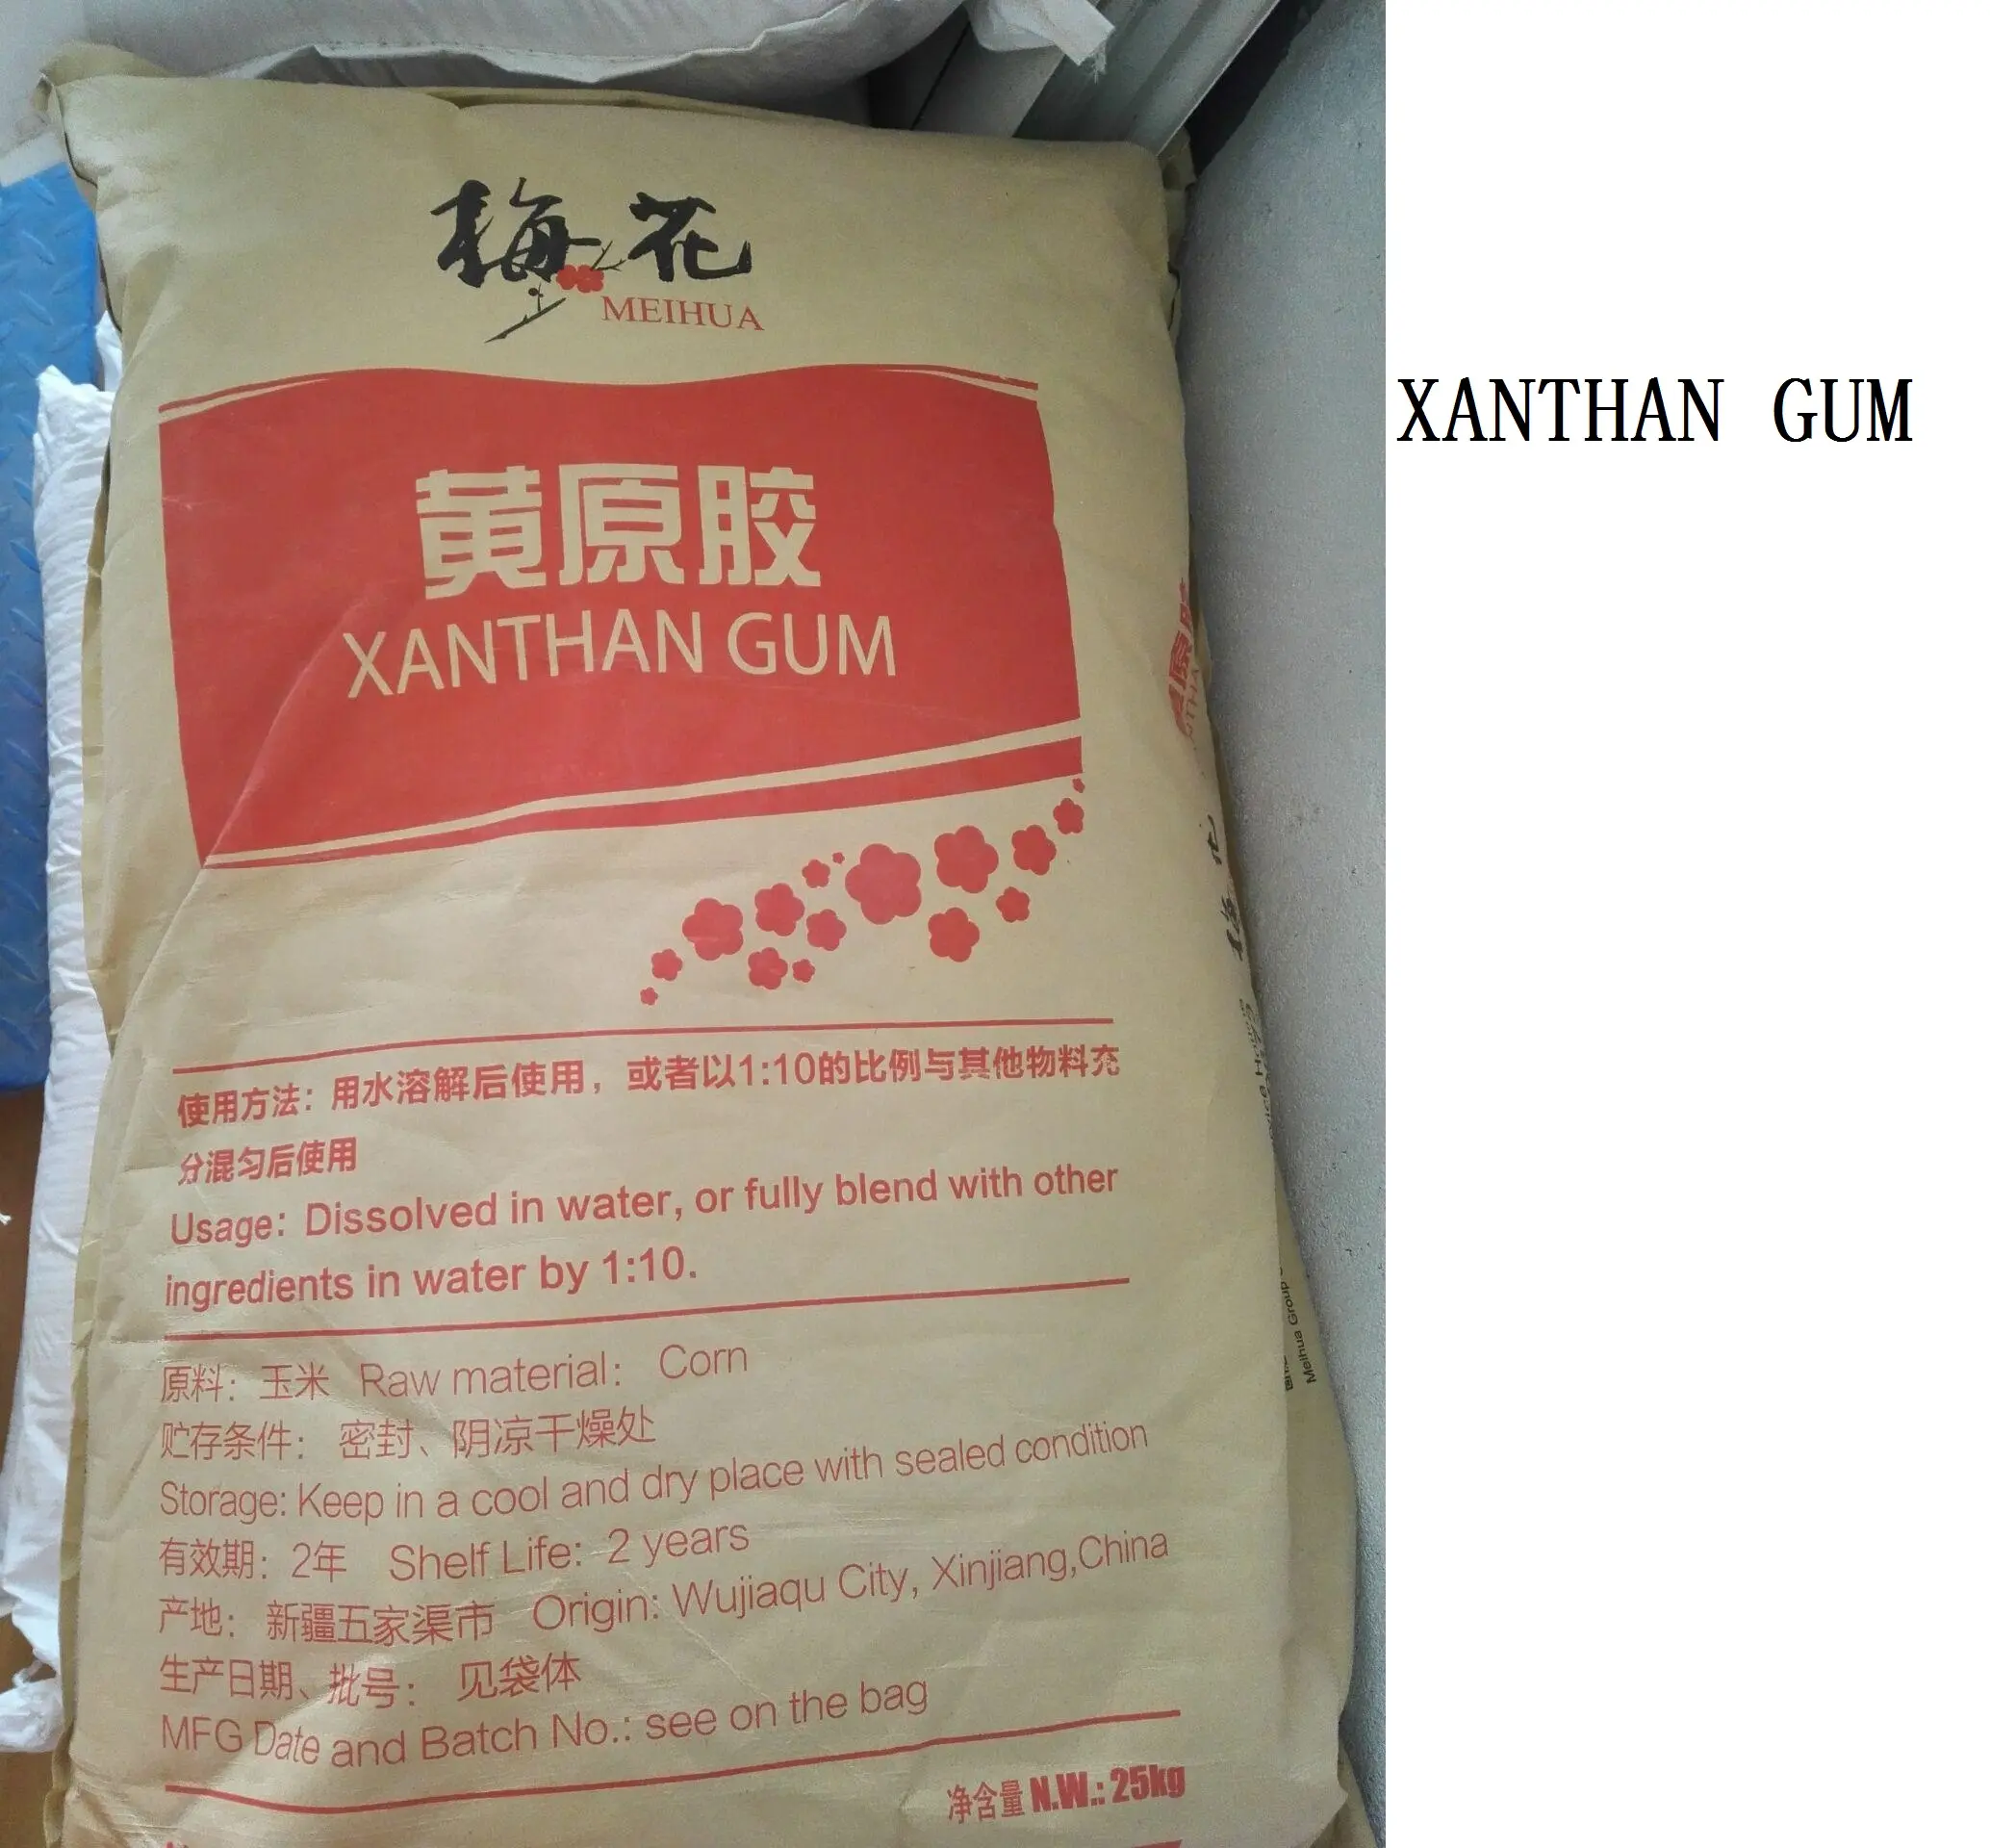 China Xanthan Gum Lebensmittel qualität Industrie qualität Meihua Fufeng Xanthan Gum 80 Mesh